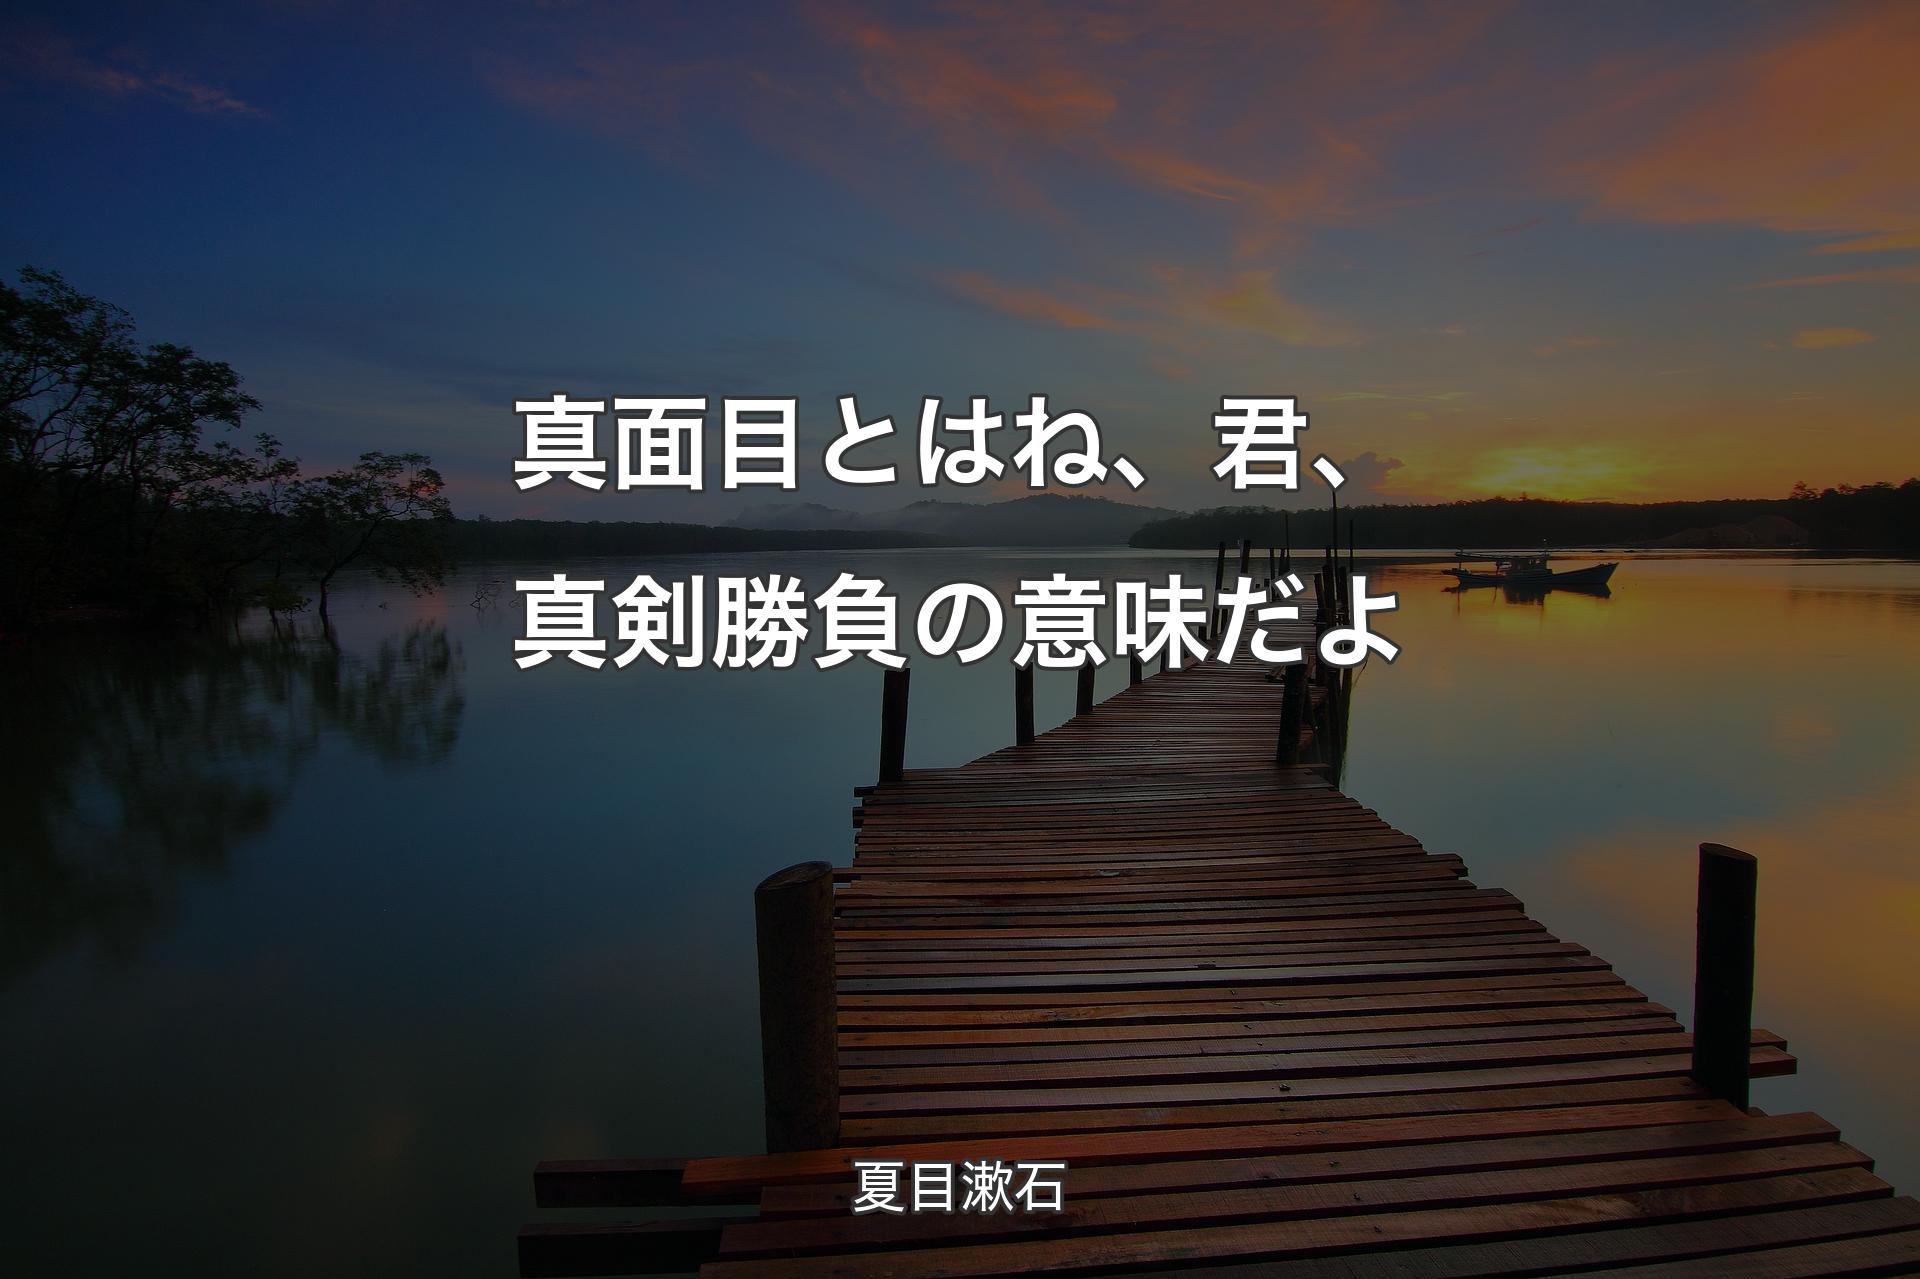 【背景3】真面目とはね、君、真剣勝負の意味だよ - 夏目漱石